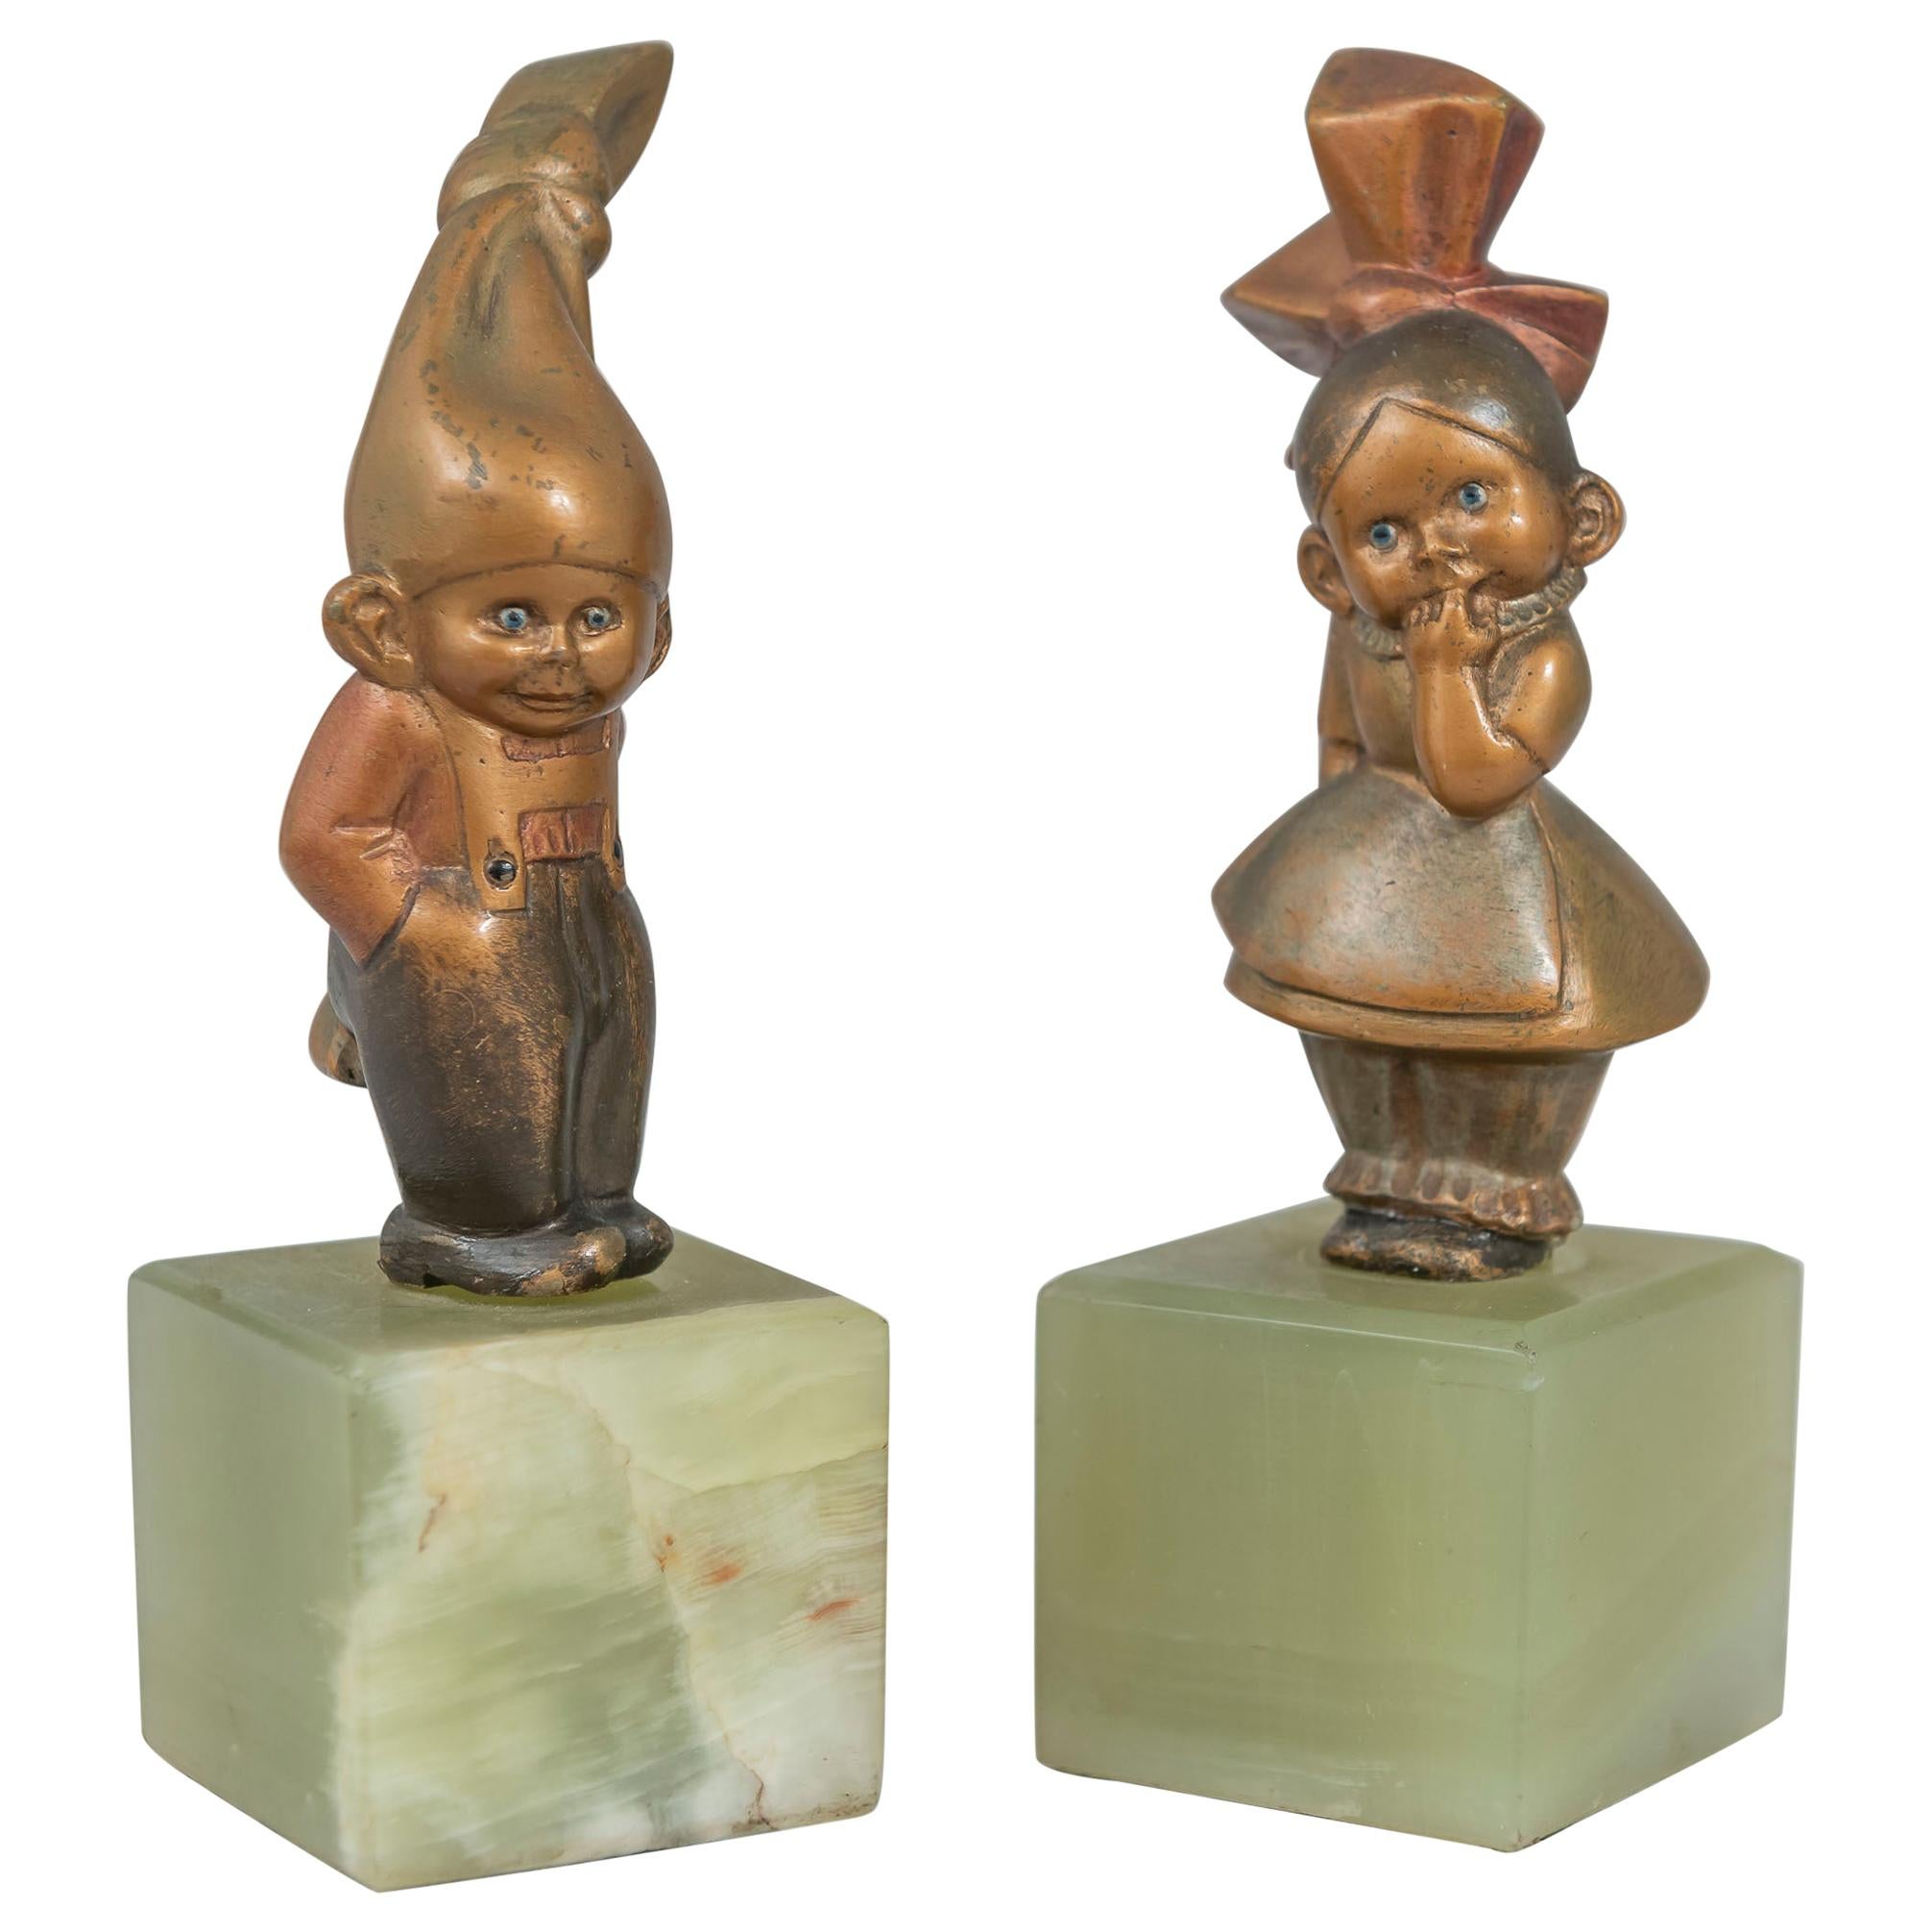 Ein sehr seltenes und skurriles Paar von kalt bemalten Wiener Bronze-Kewpies. Wir haben in den über 40 Jahren unserer Tätigkeit viele Wiener Bronzen verkauft, aber wir müssen sagen, dass diese sehr ungewöhnlich und selten sind. Ein Teil dessen, was